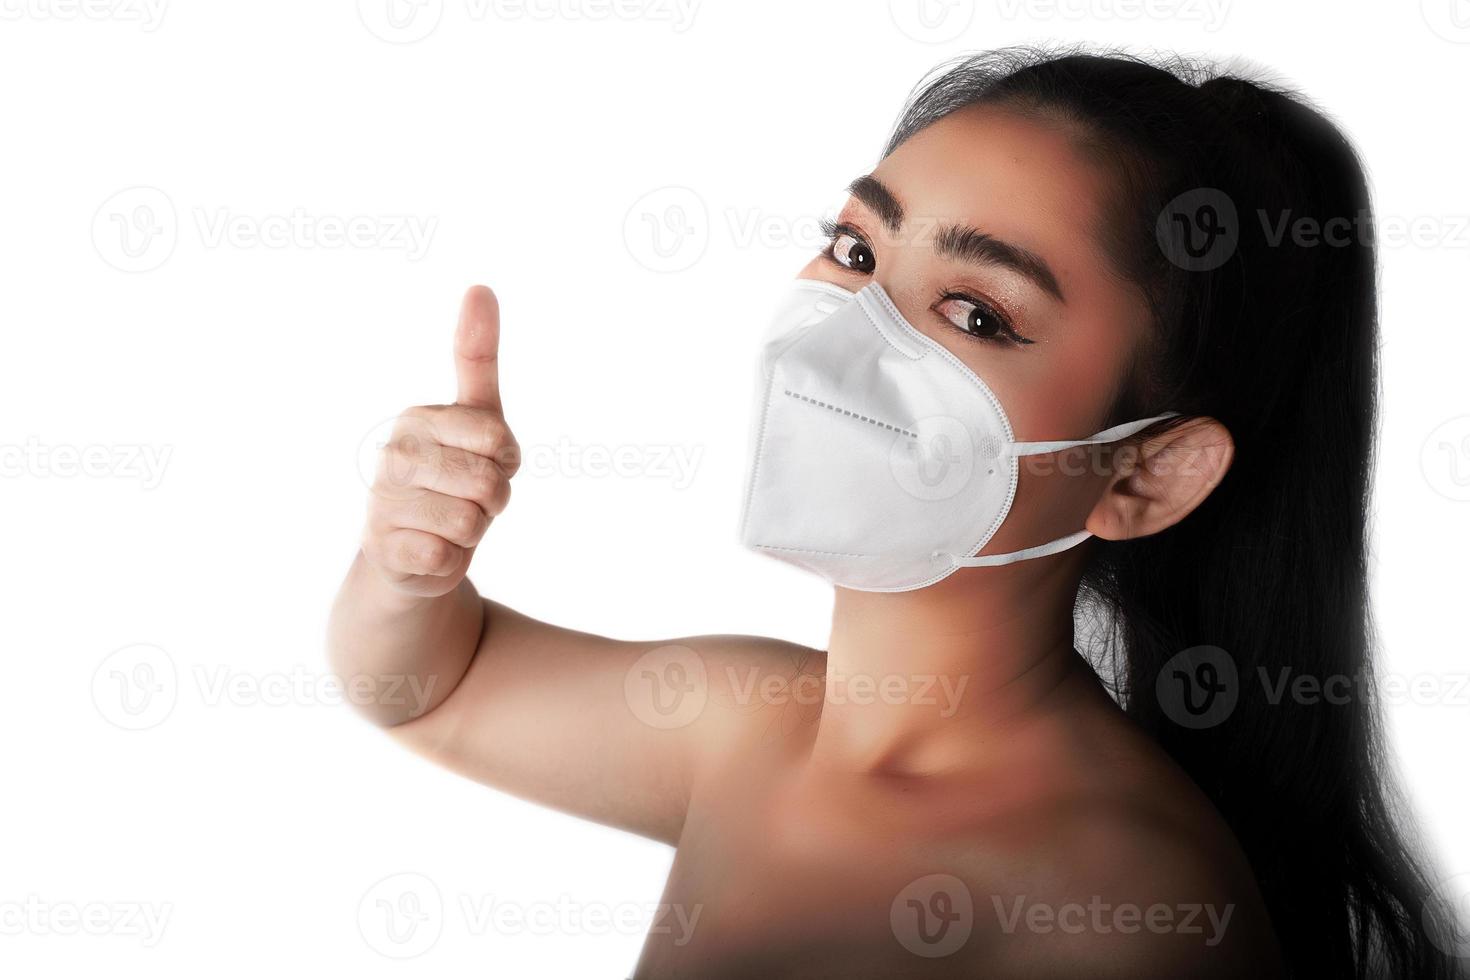 Cerca de una mujer que se pone un respirador n95 máscara para protegerse de enfermedades respiratorias transmitidas por el aire como la gripe covid-19 corona pm2.5 polvo y smog, gesto femenino de pulgar hacia arriba con la mano foto